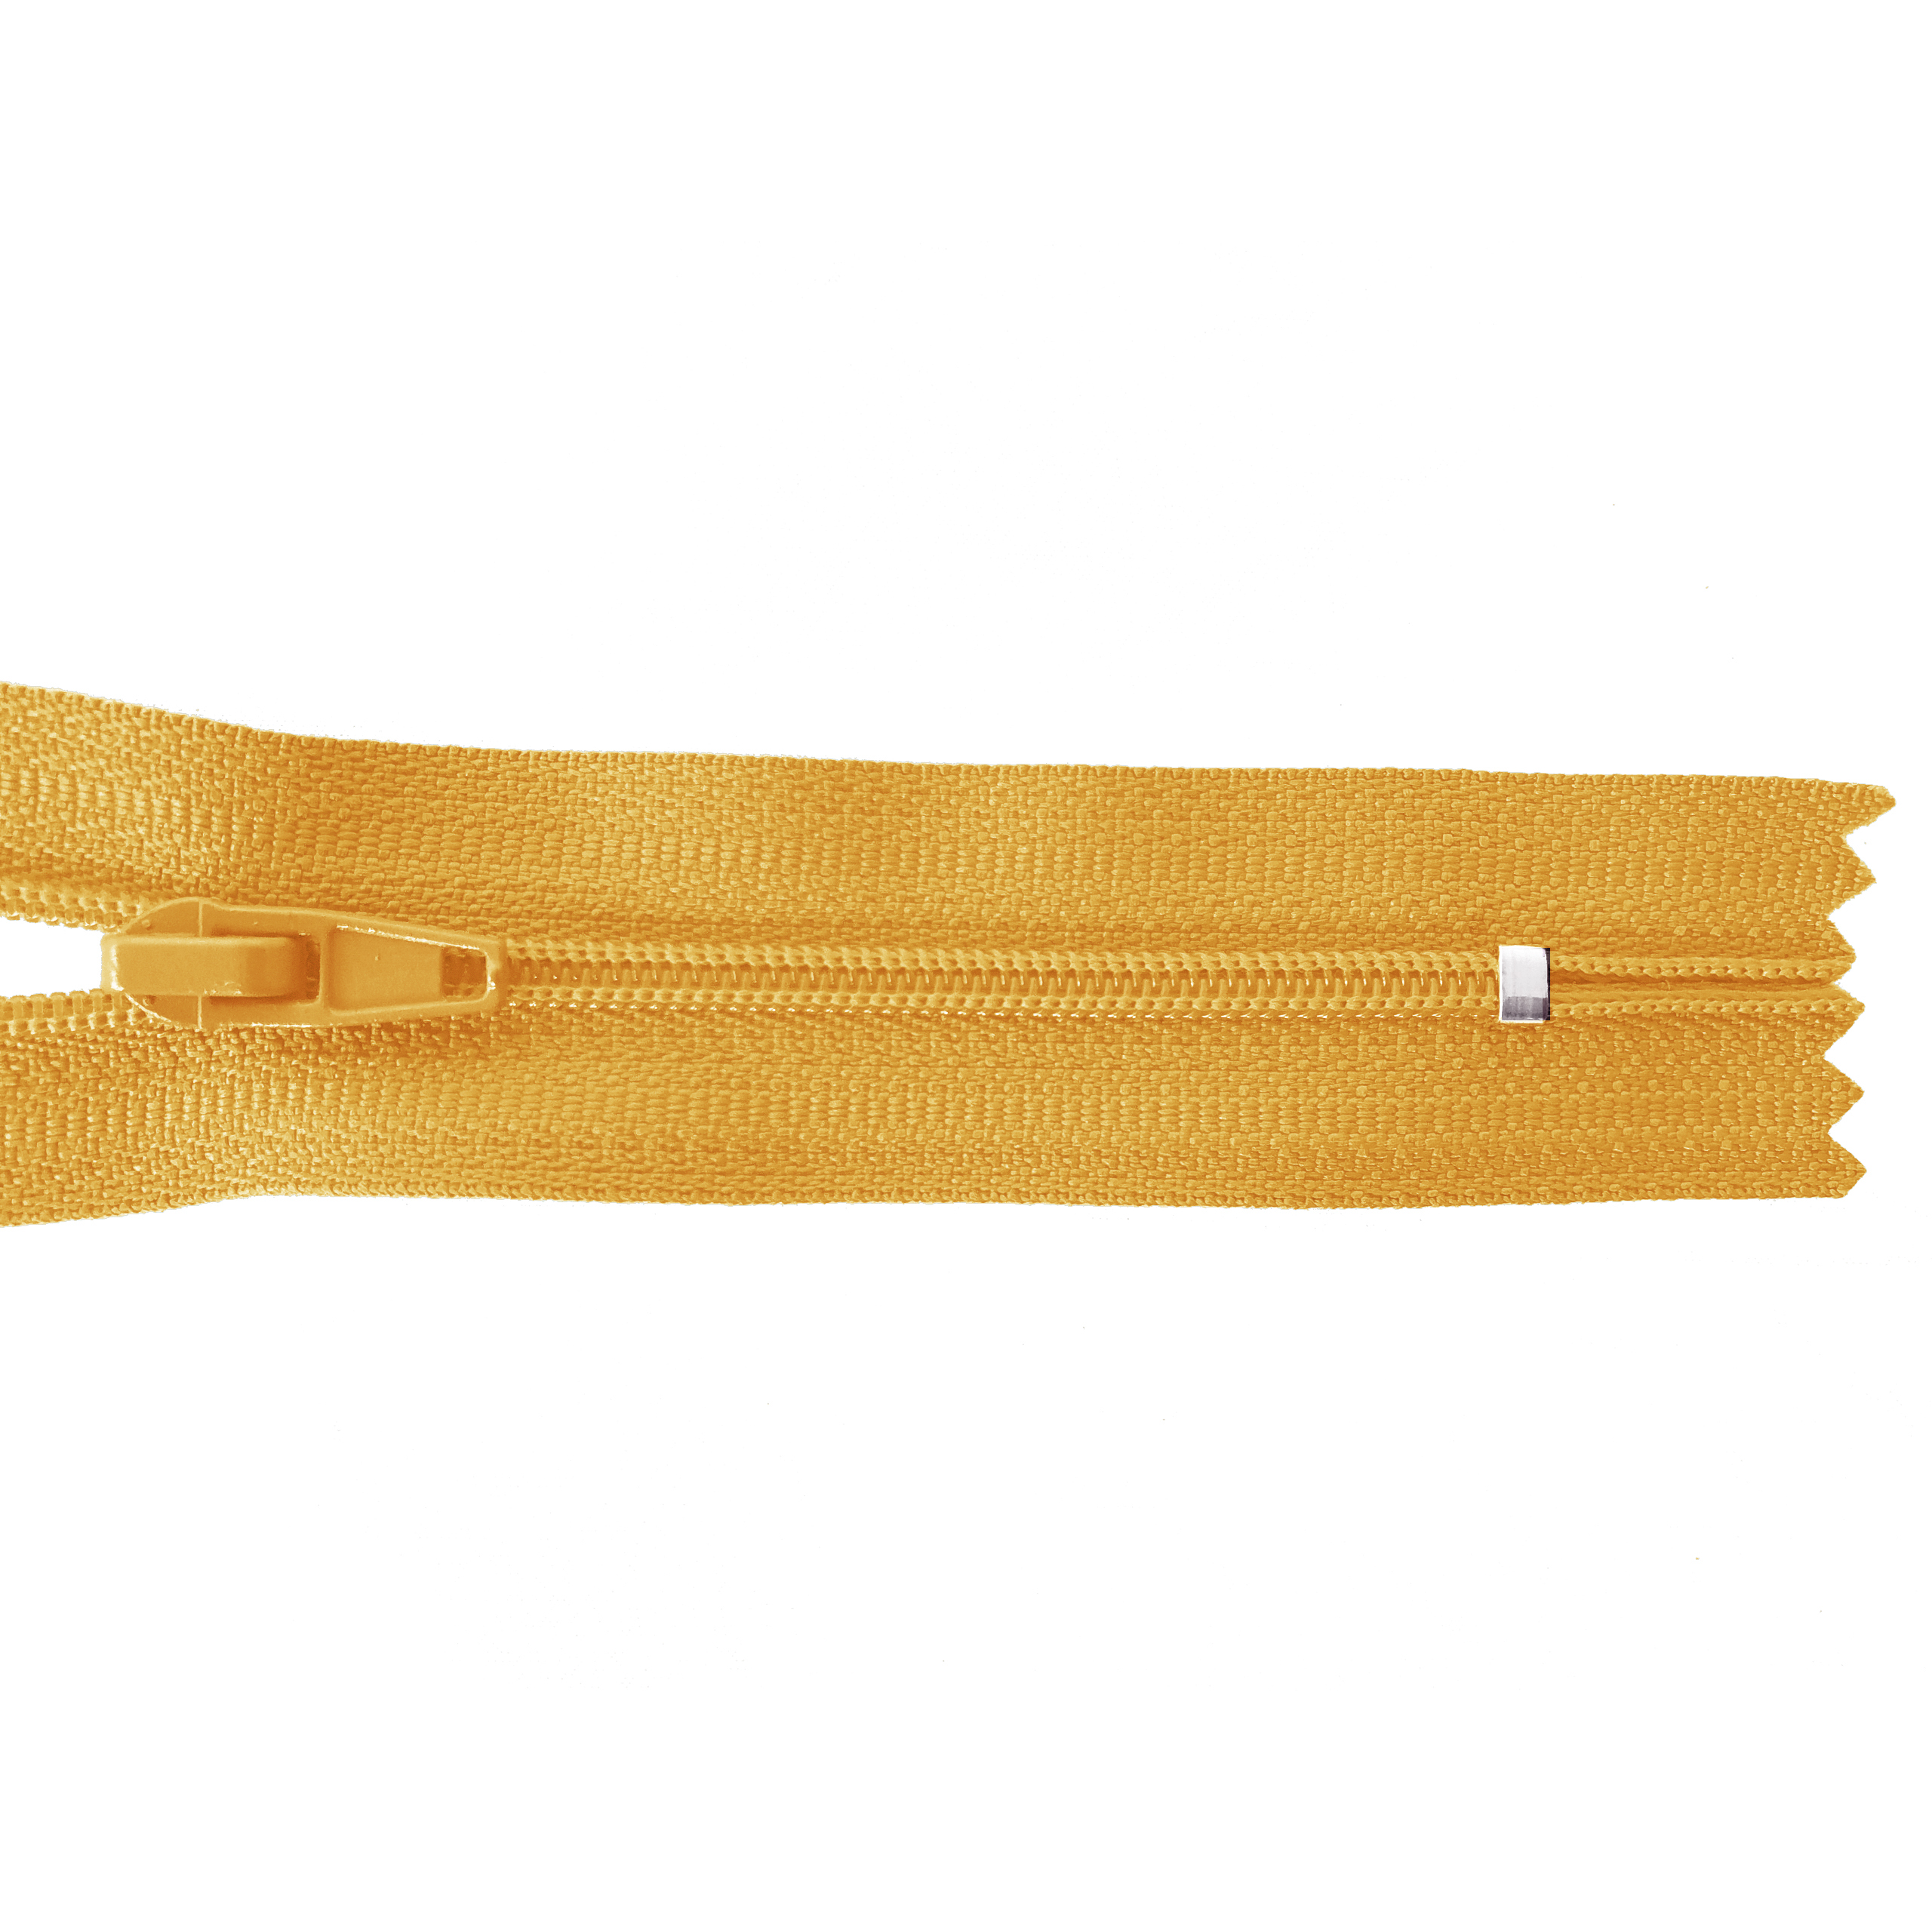 Reißverschluss 20cm, nicht teilbar, PES-Spirale fein, hellorange-gelb, hochwertiger Marken-Reißverschluss von Rubi/Barcelona